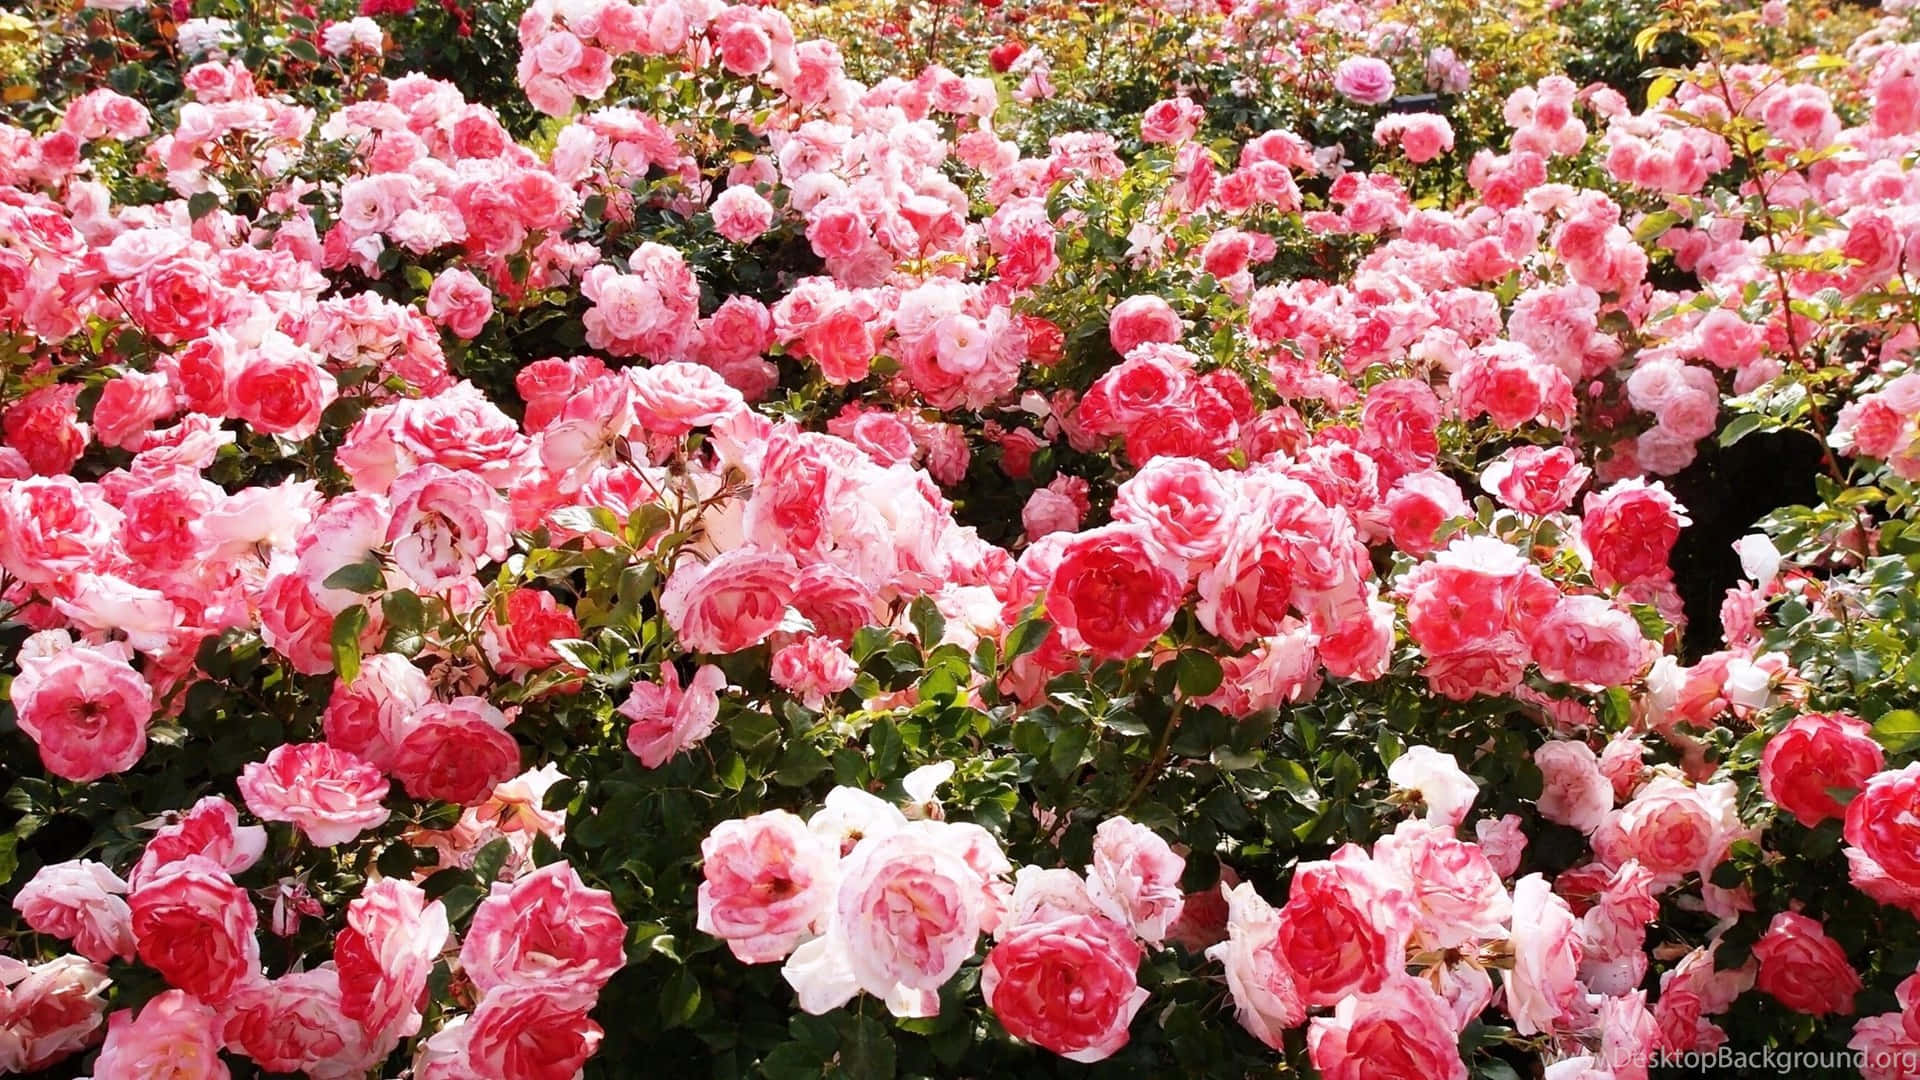 Armoniosacollezione Di Splendide Rose Da Giardino.